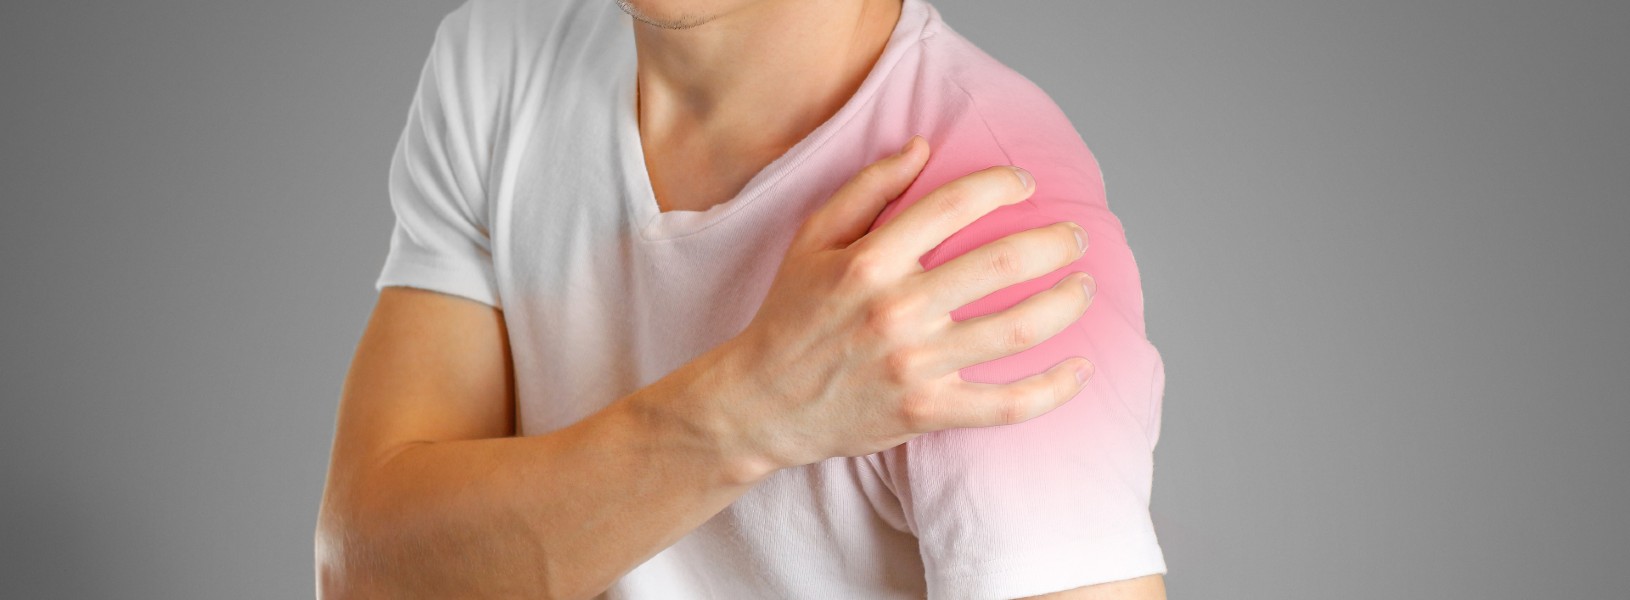 durere severă în articulația umărului brațului stâng